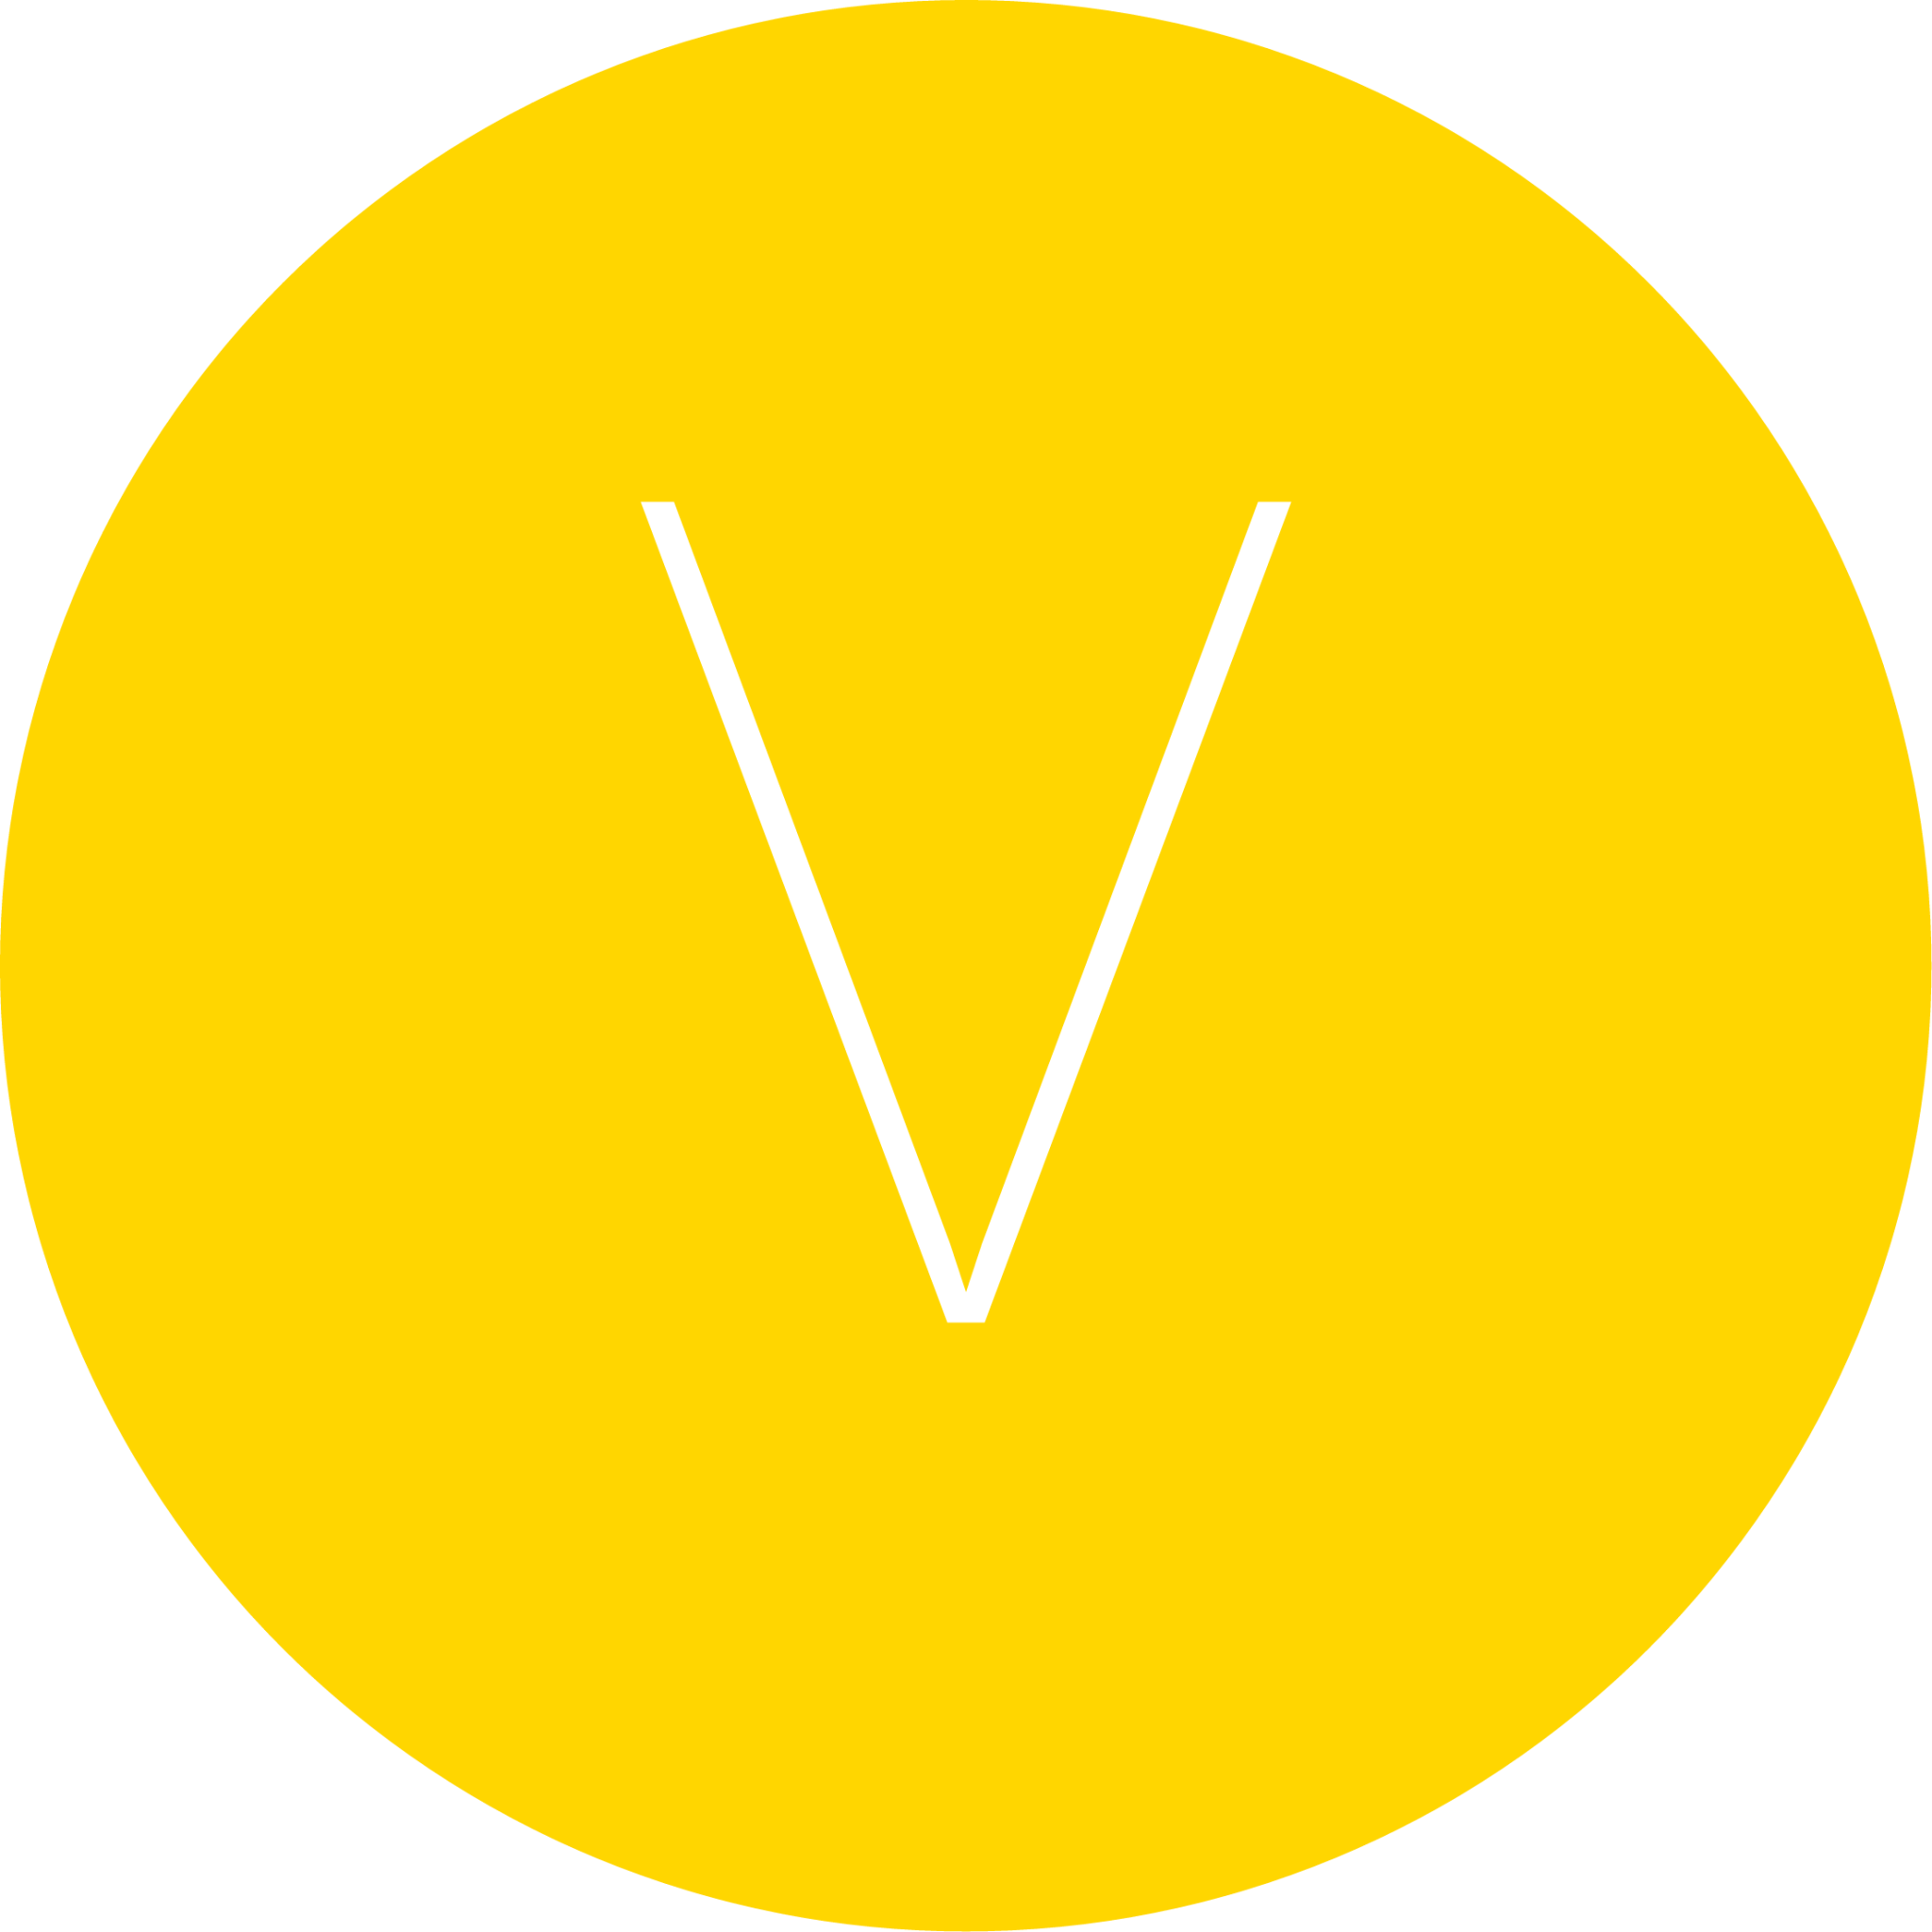 V letter icon